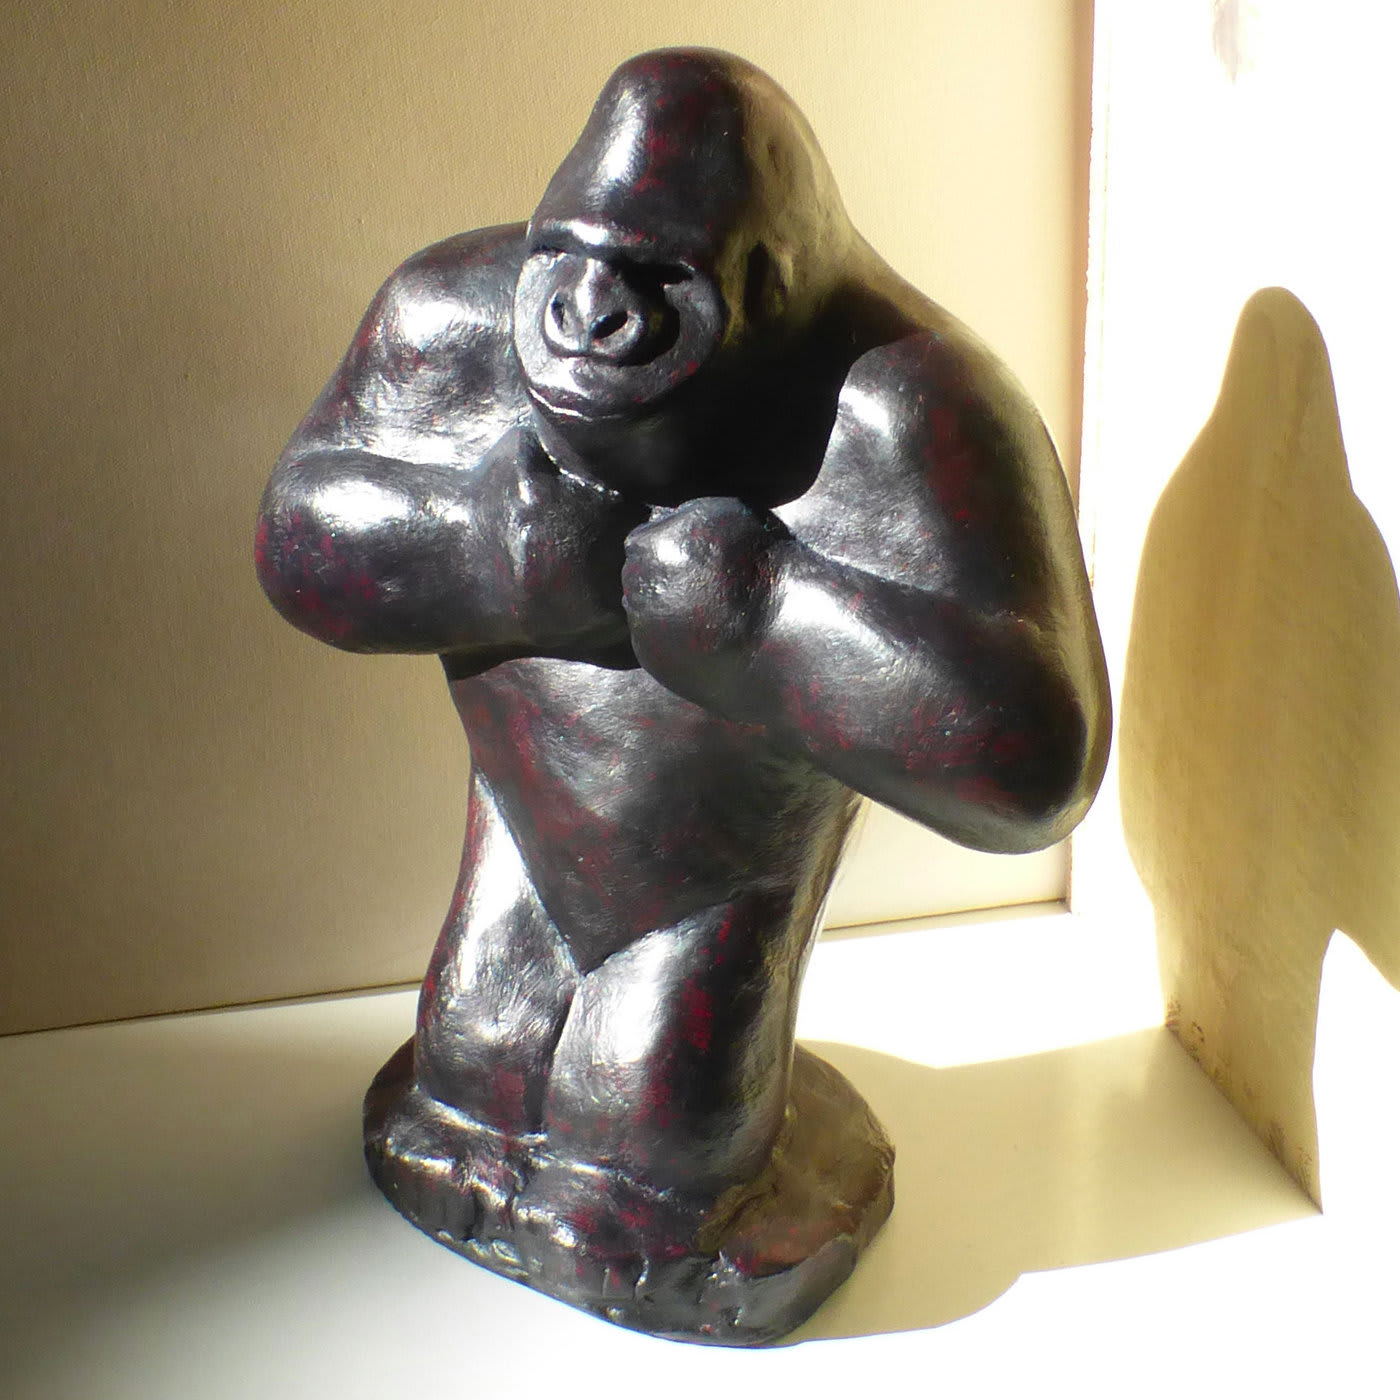 Ebony-Colored Gorilla Sculpture - Daniele Nannini